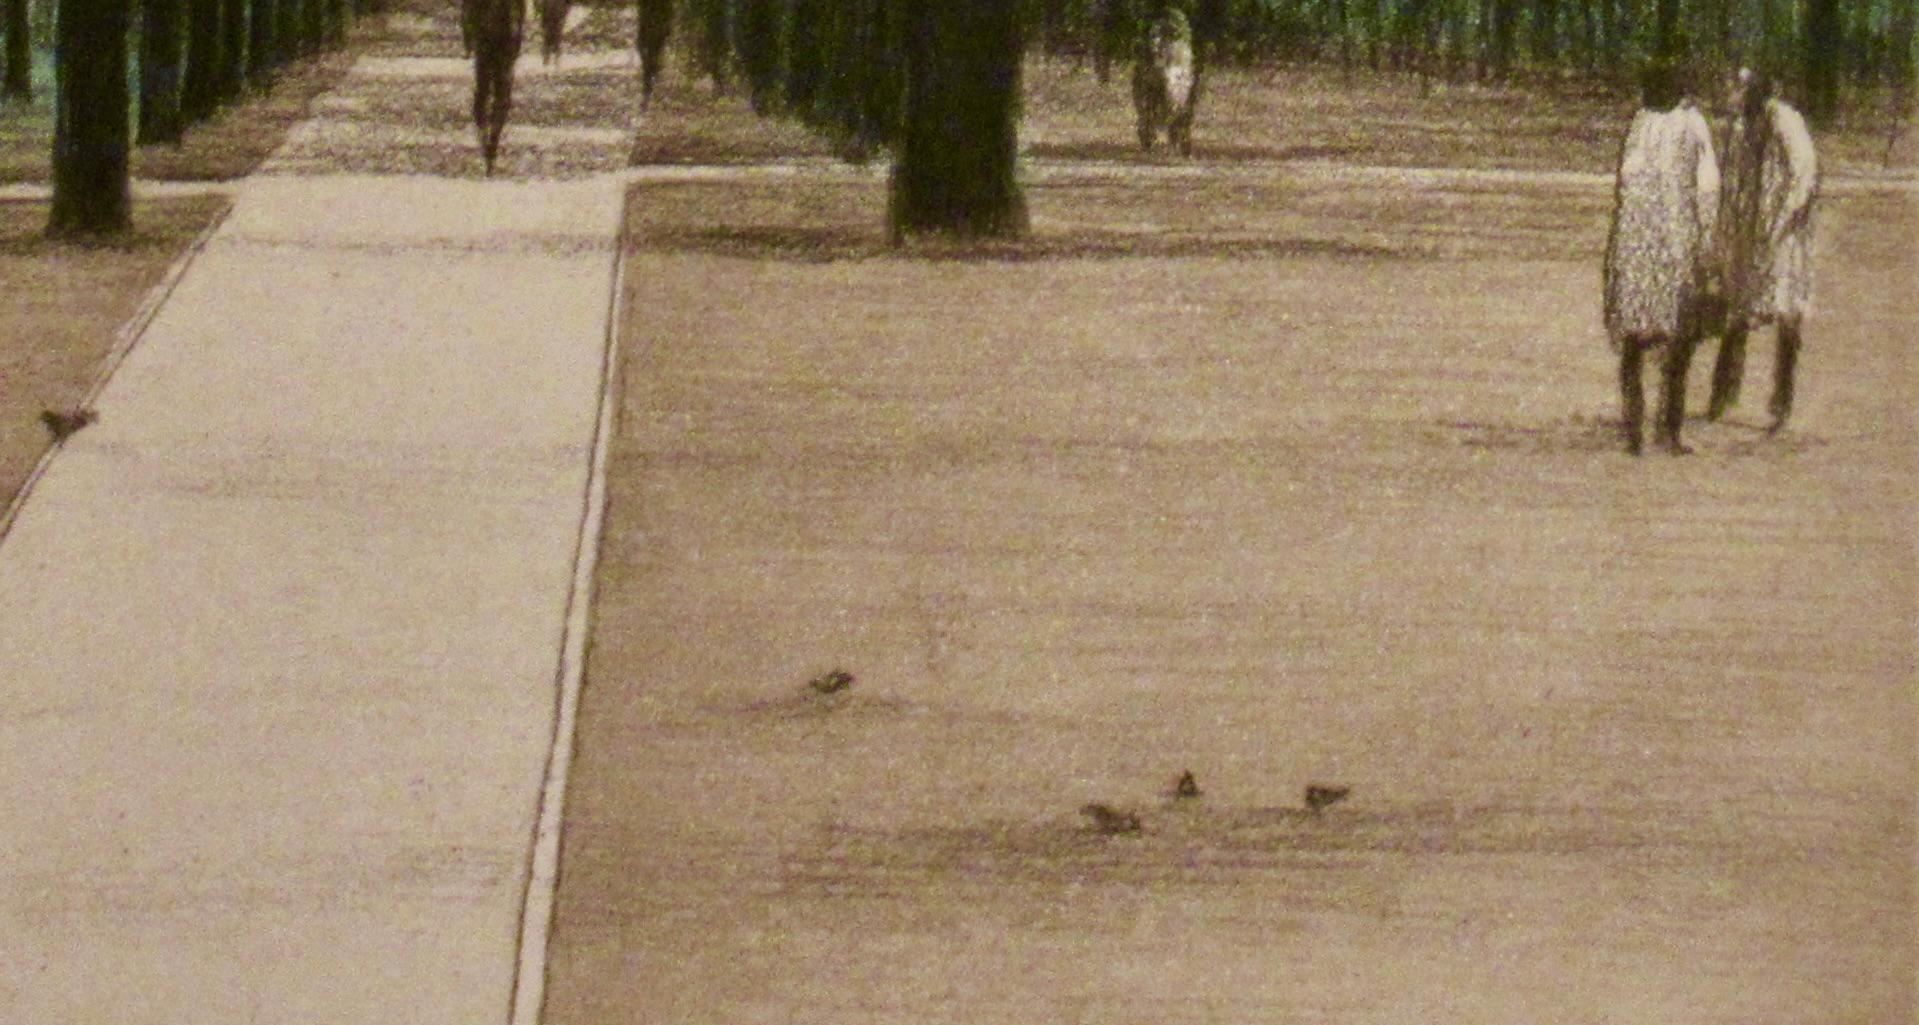 Artiste :   Harold Altman (américain, 1924-2003)
Titre :  Cinq pigeons (Jardin du Luxembourg, Paris)
Année :  1981
Moyen :	Gravure originale en couleurs avec aquatinte
Edition : Numéroté 75/200 au crayon
Papier :  Arches
Taille de l'image (marque de